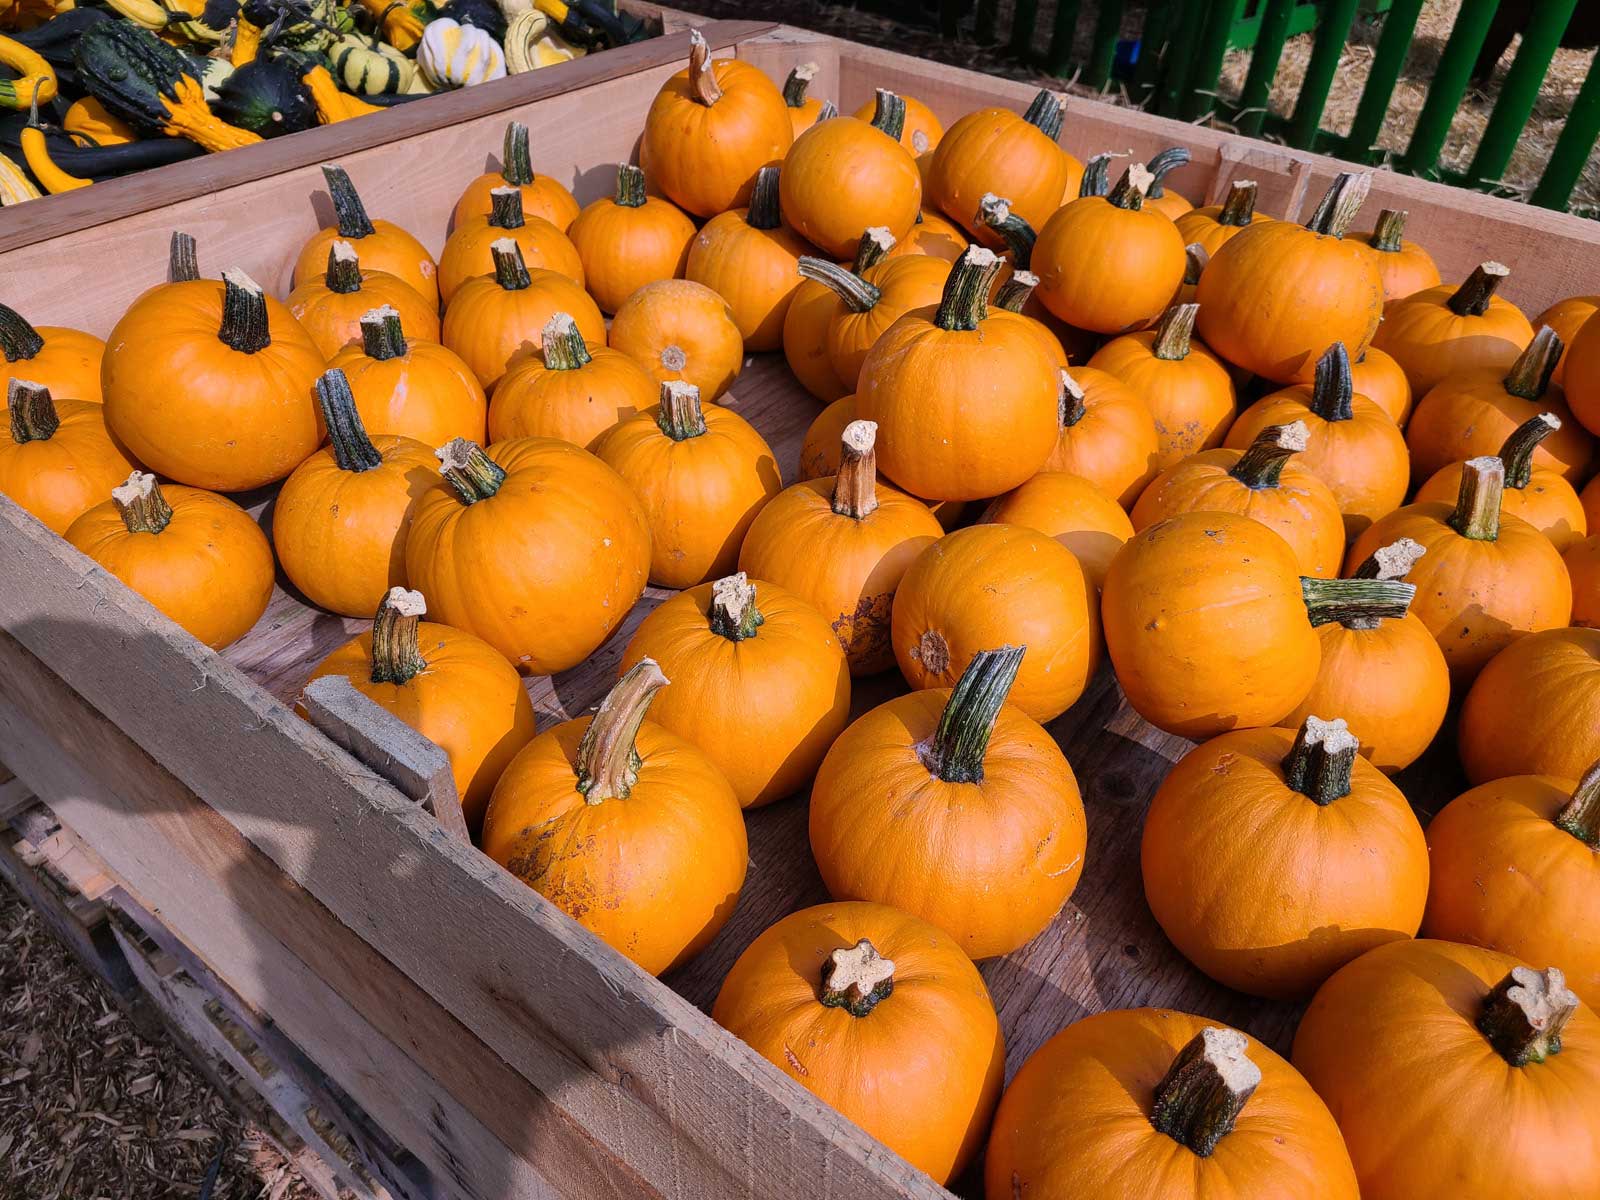 Halloweed Pumpkins at Goffle Brook Farms in Ridgewood NJ